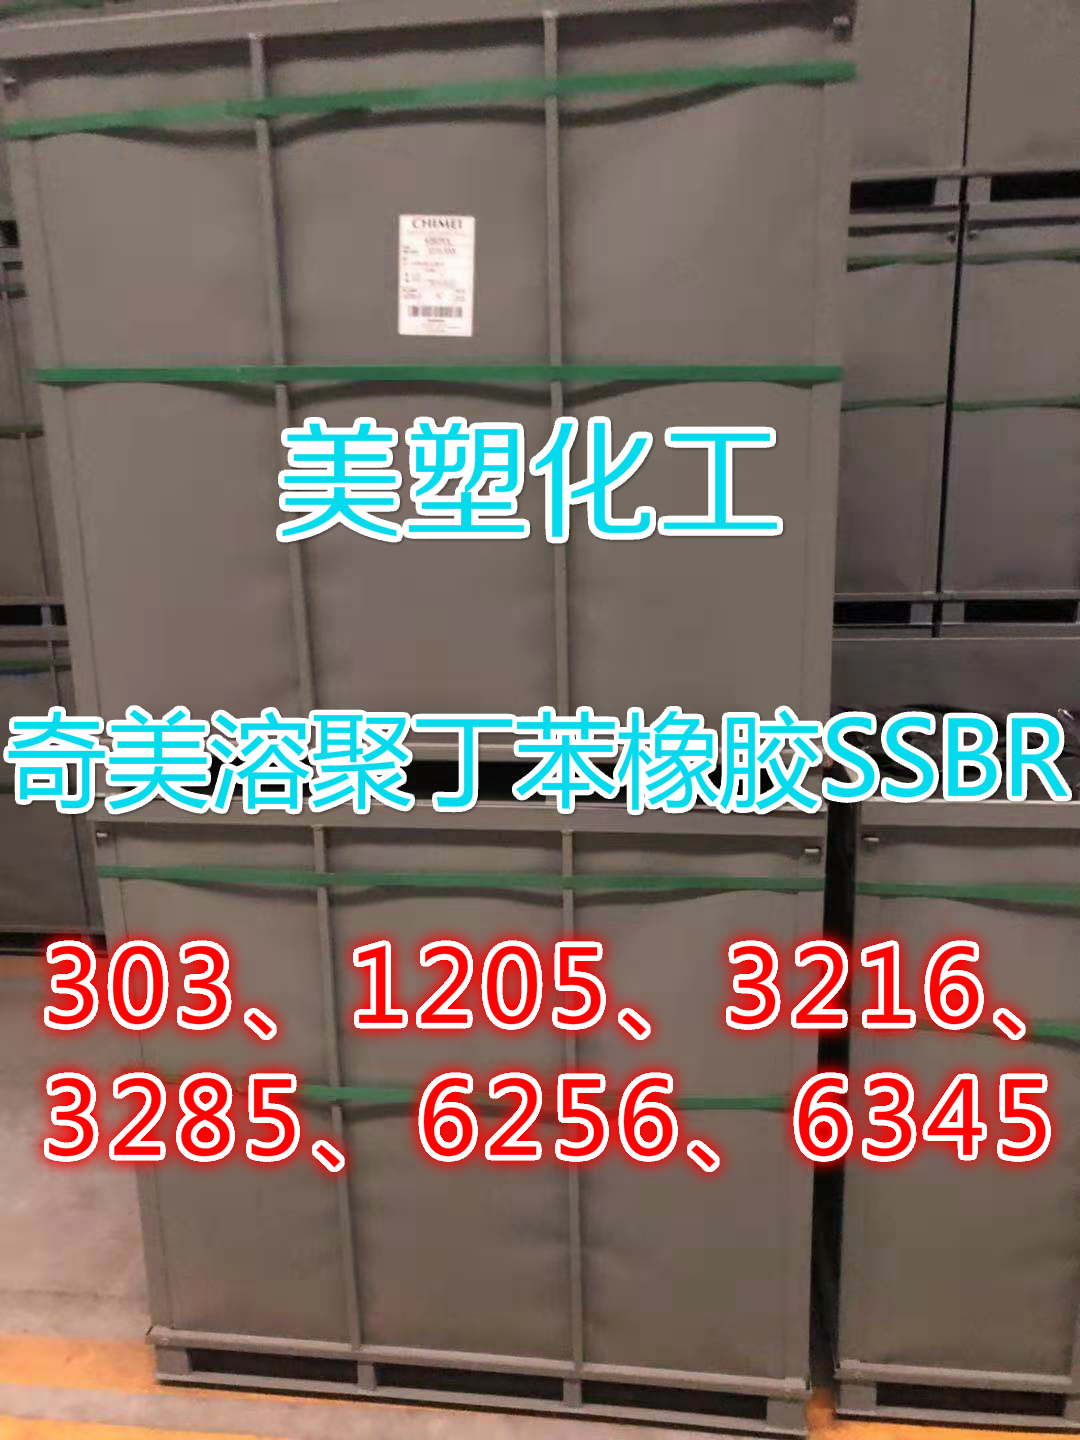 中国台湾奇美溶聚丁SSB05 CHIMEI SSBR KIBIPOL新包装